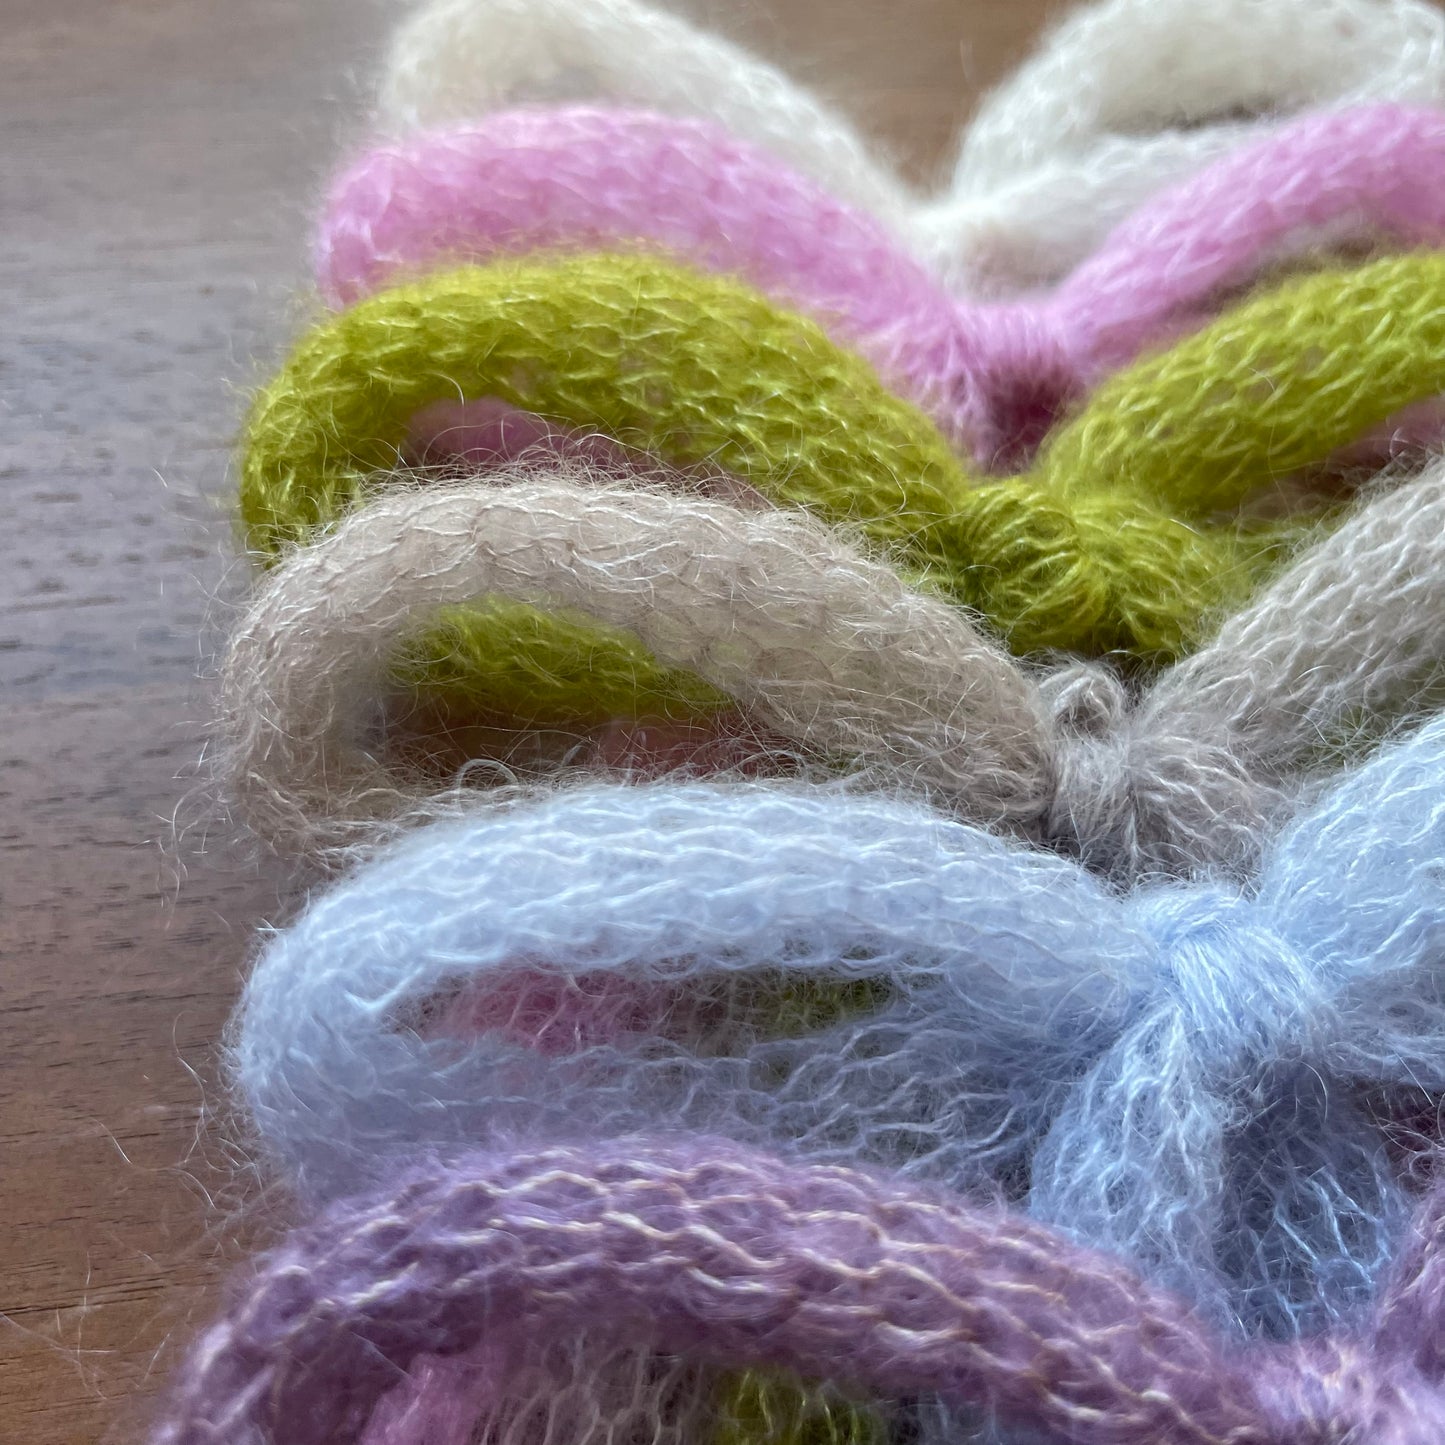 x2 handmade knitted mohair hair bows (pair) - 5 COLOUR OPTIONS